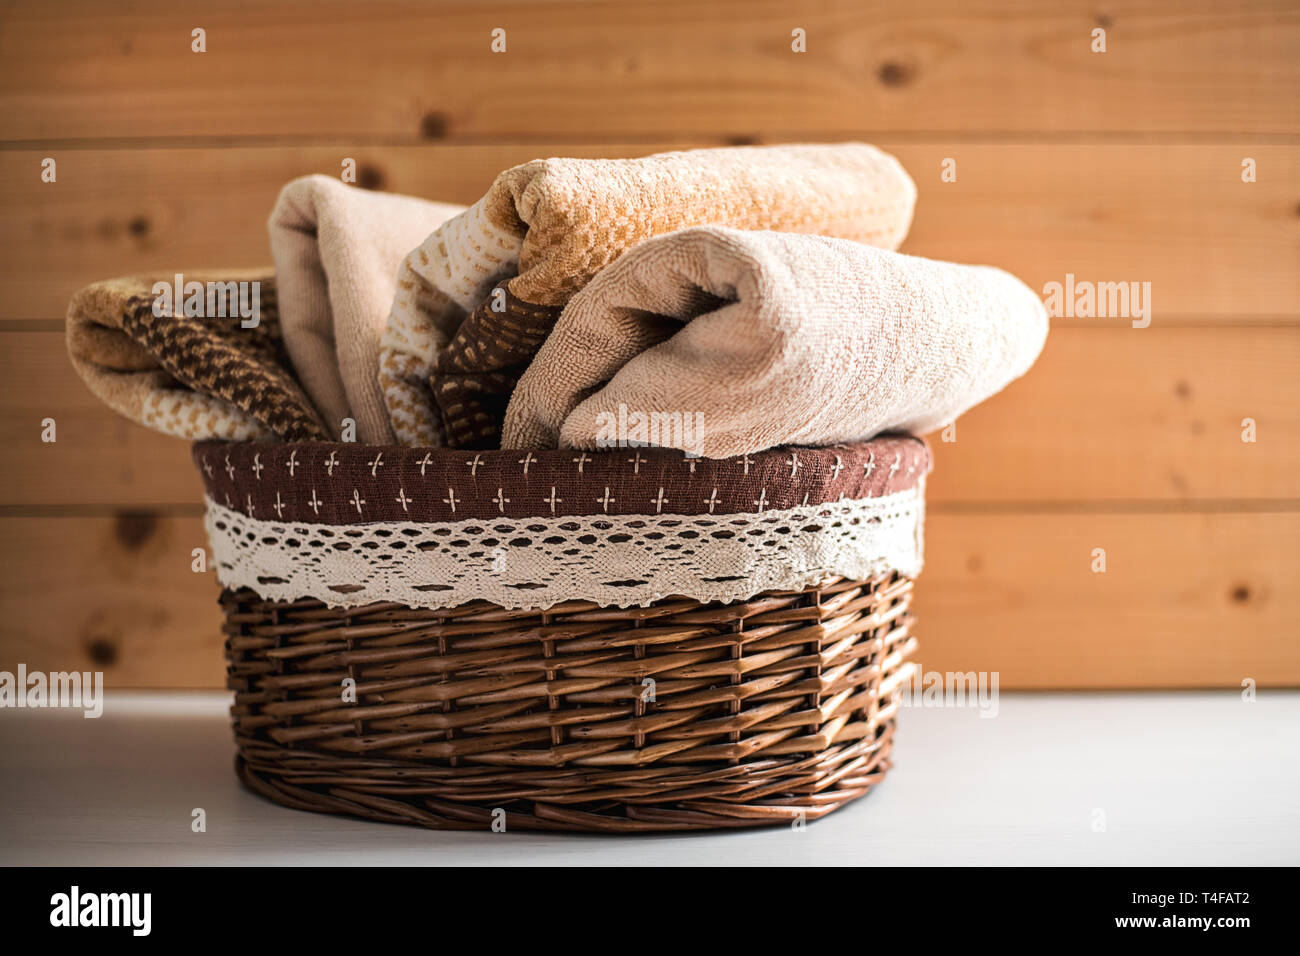 Korb mit Handtücher auf Holz- Hintergrund Stockfotografie - Alamy